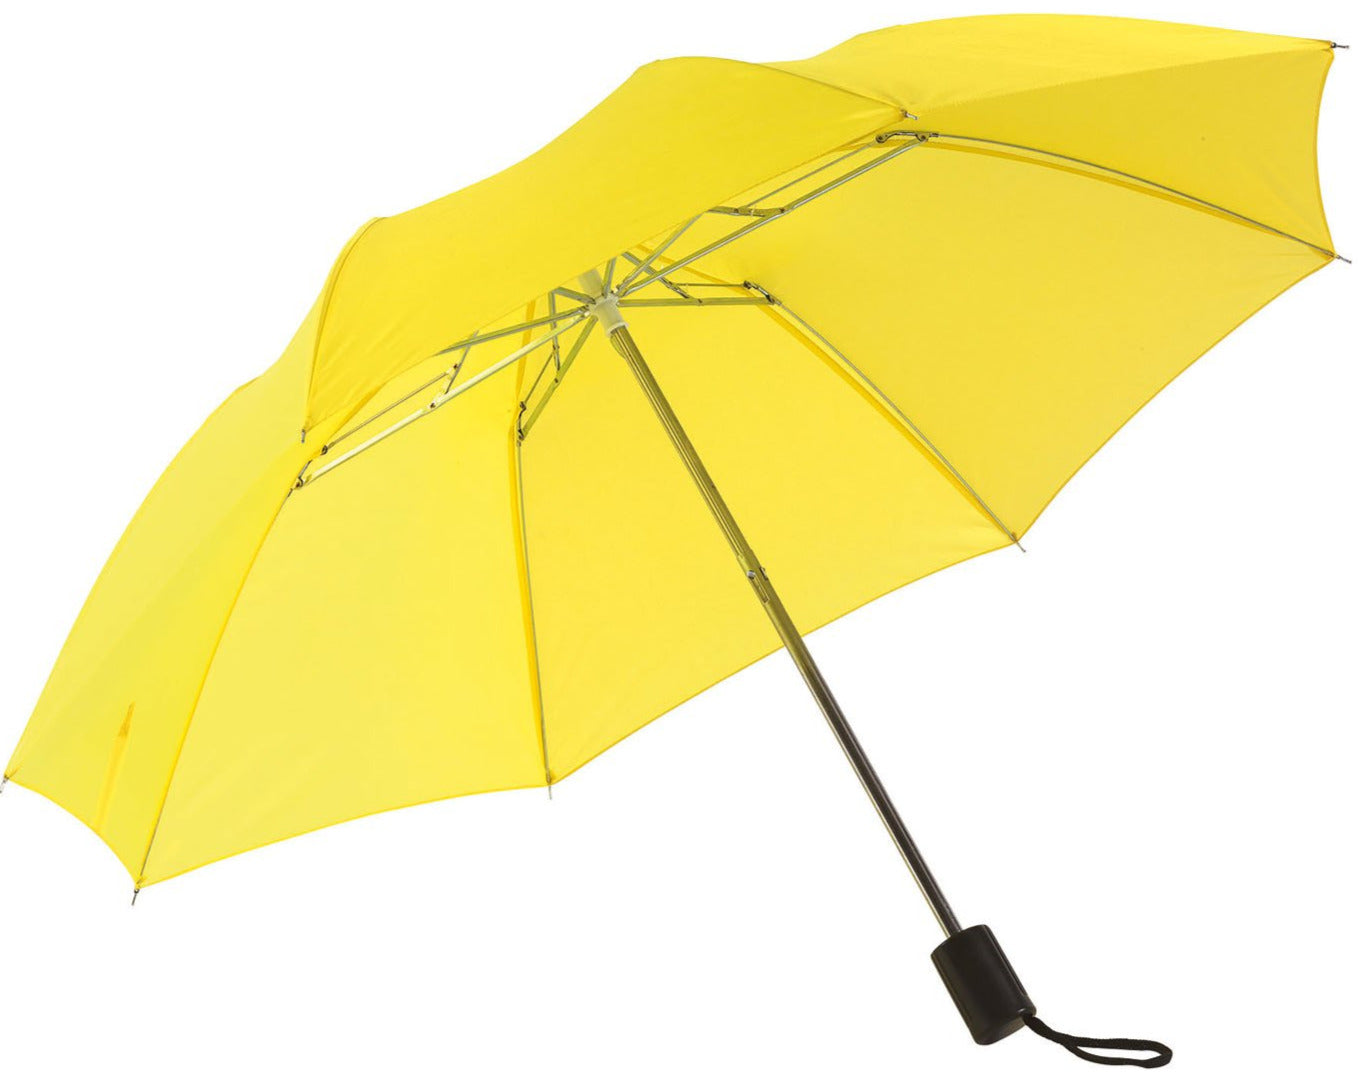 Κίτρινη παιδική ομπρέλα βροχής, σπαστή, απλή, και σε πολλά χρώματα.